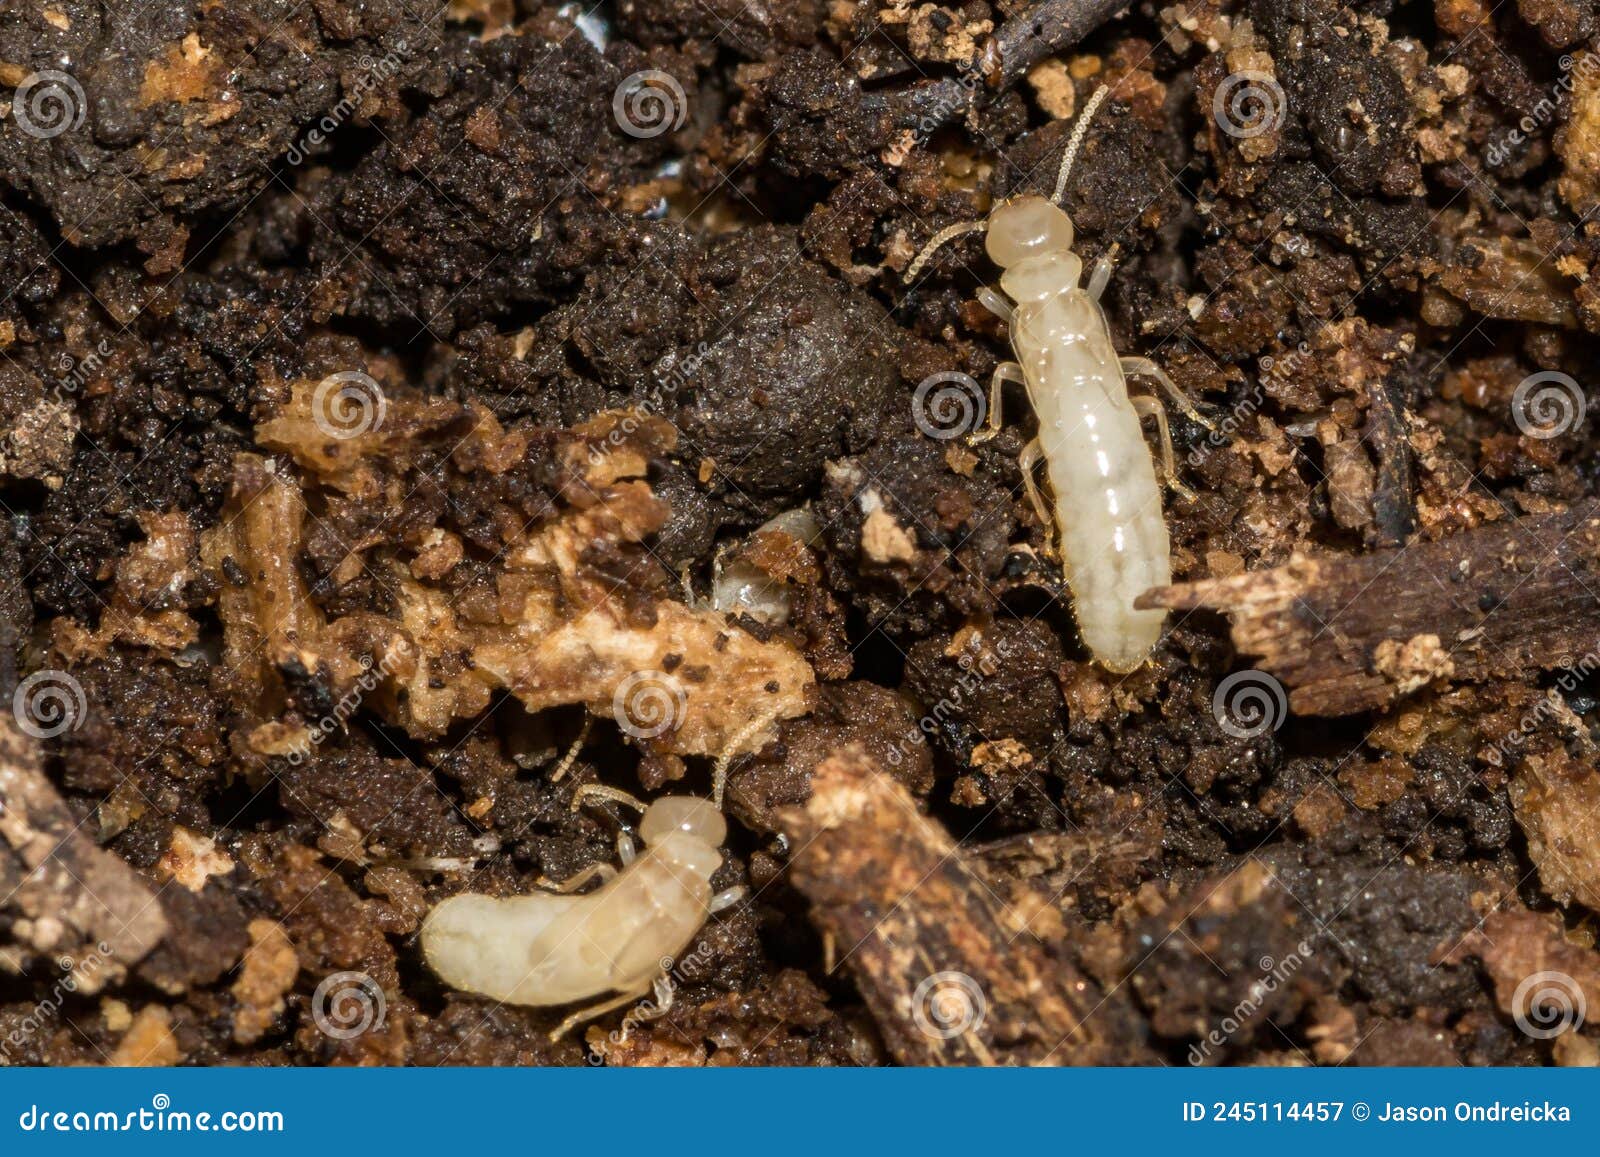 eastern subterranean termite - reticulitermes flavipes